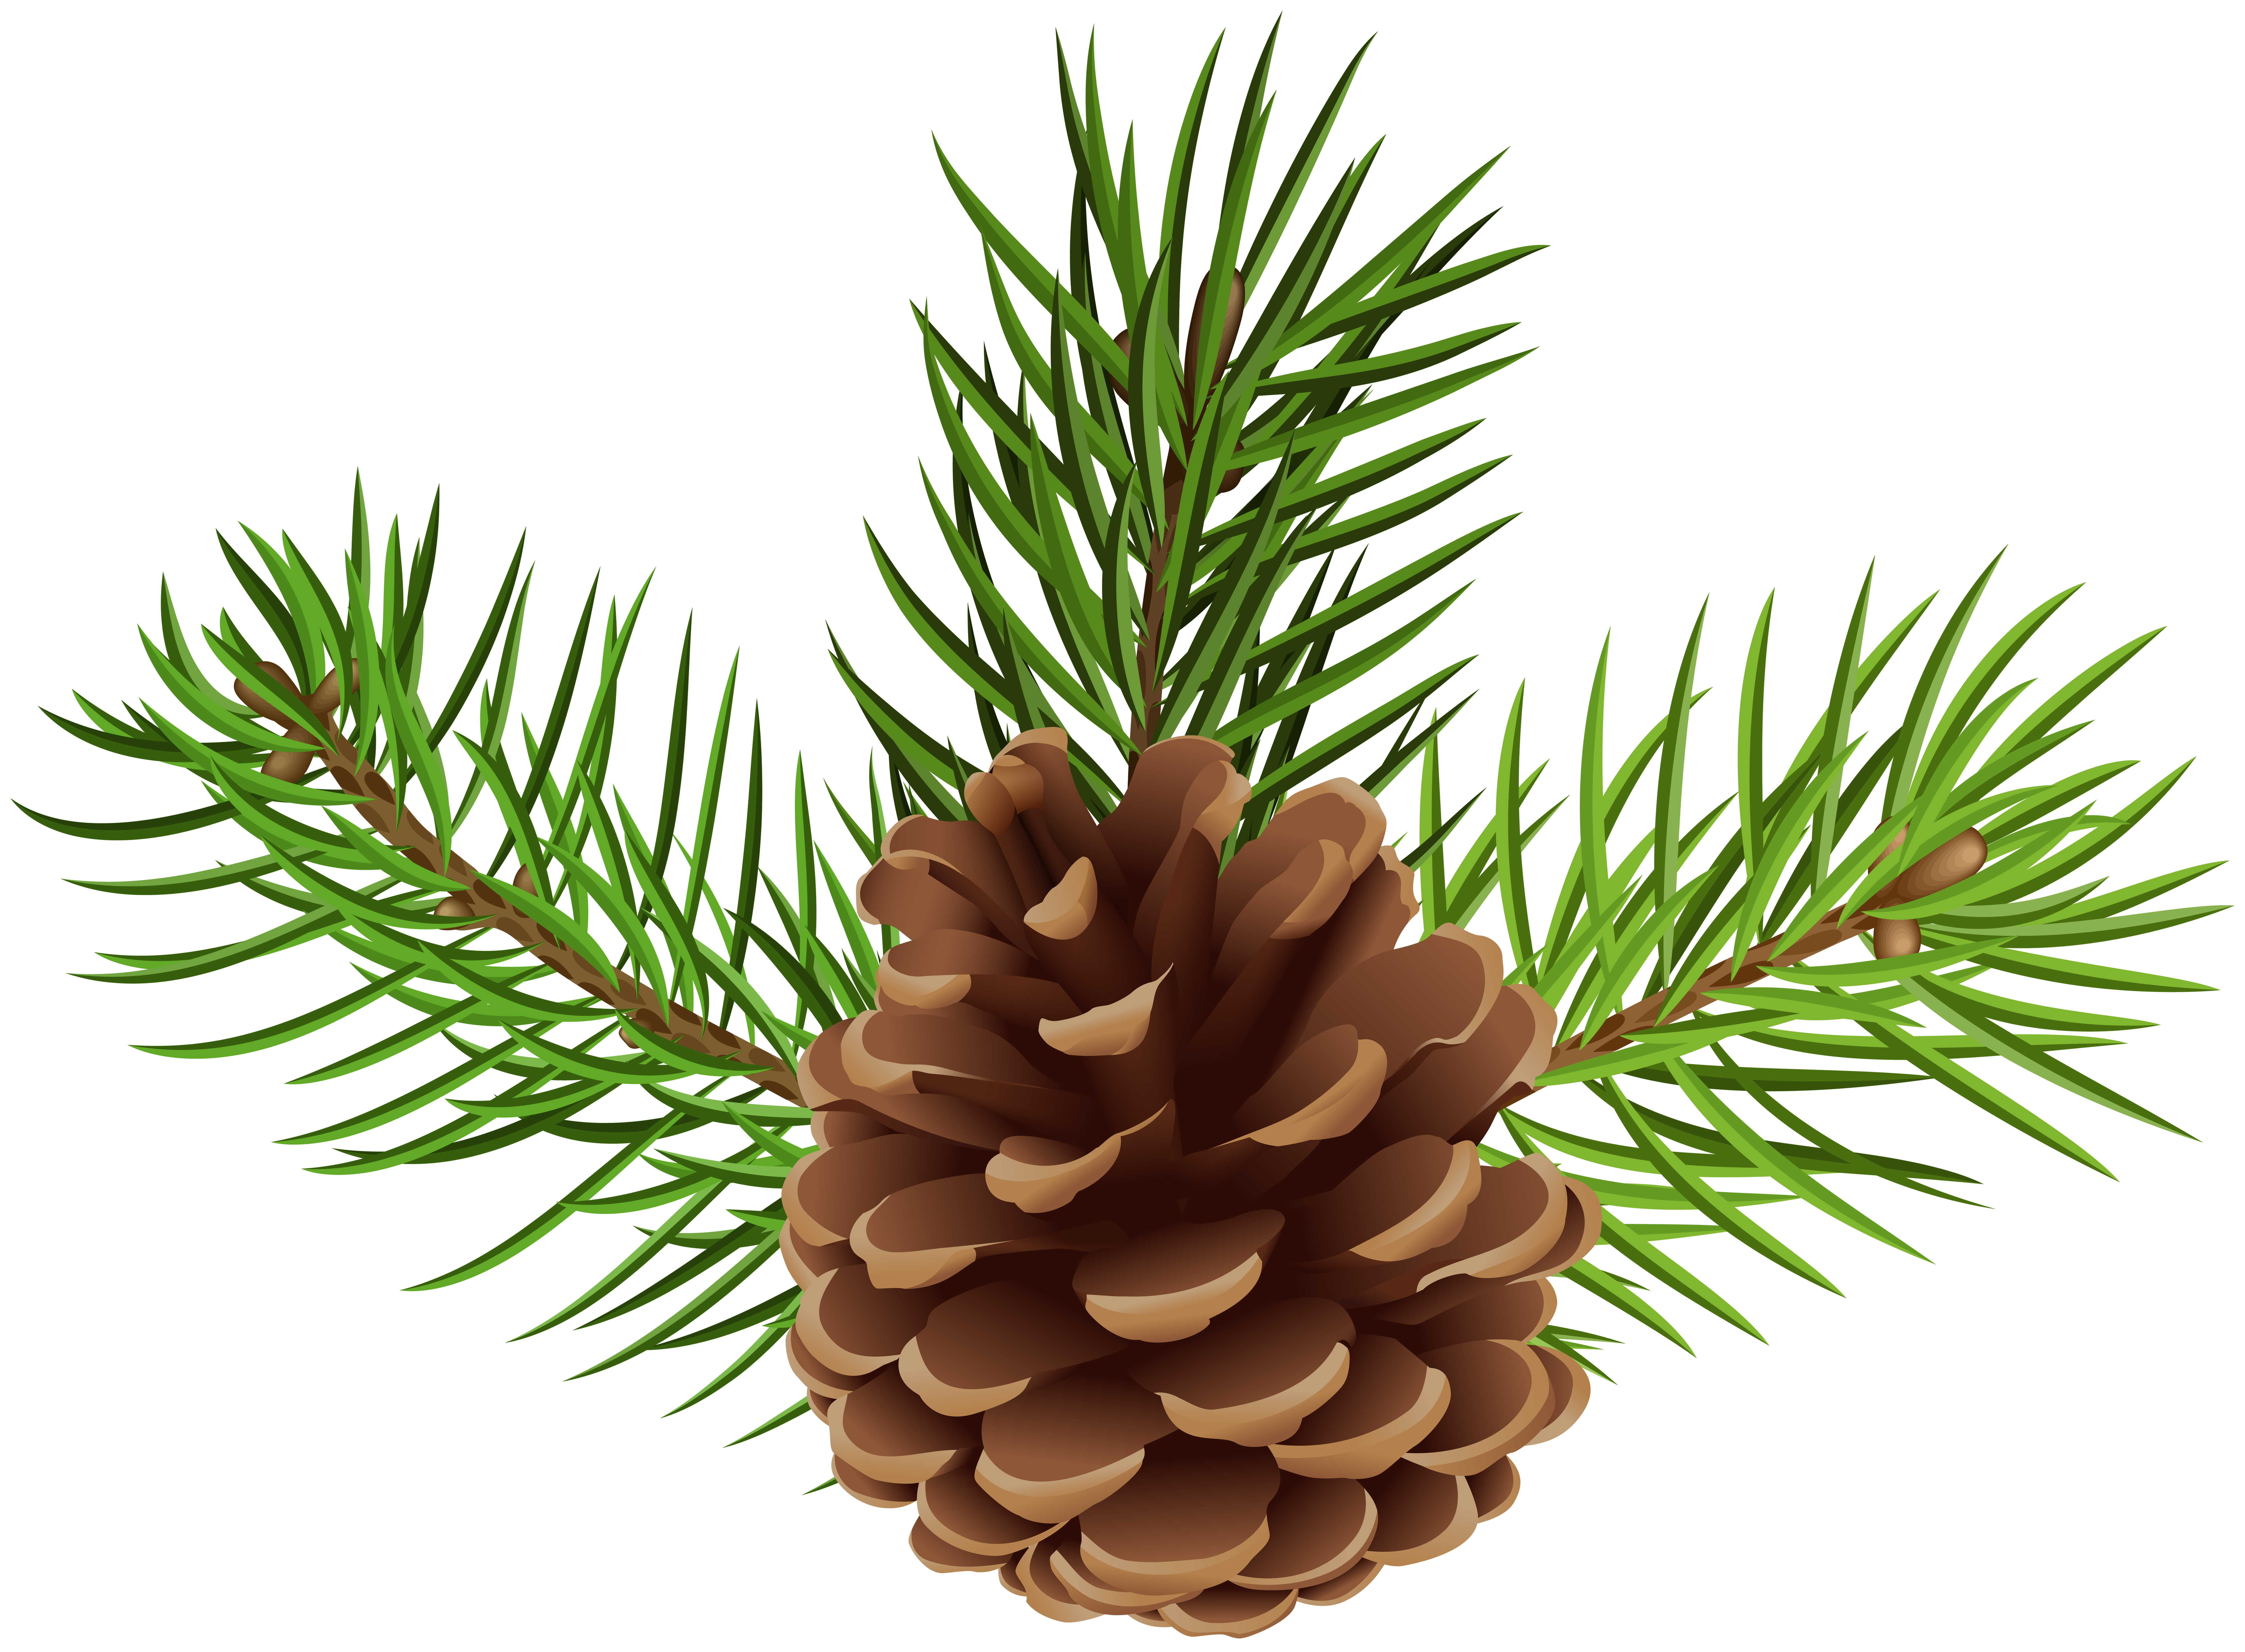 pine cone clipart